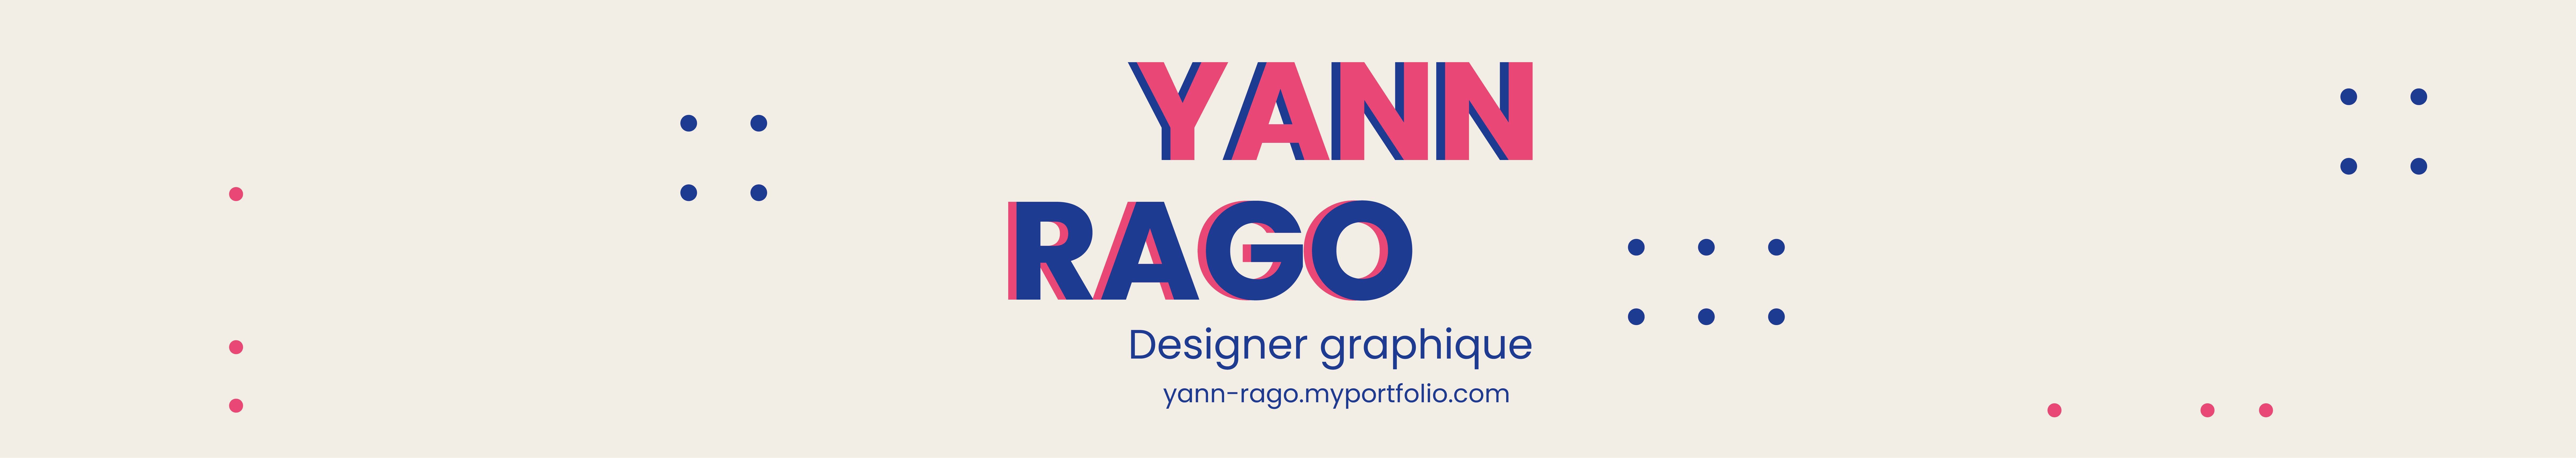 Banner de perfil de Yann RAGO